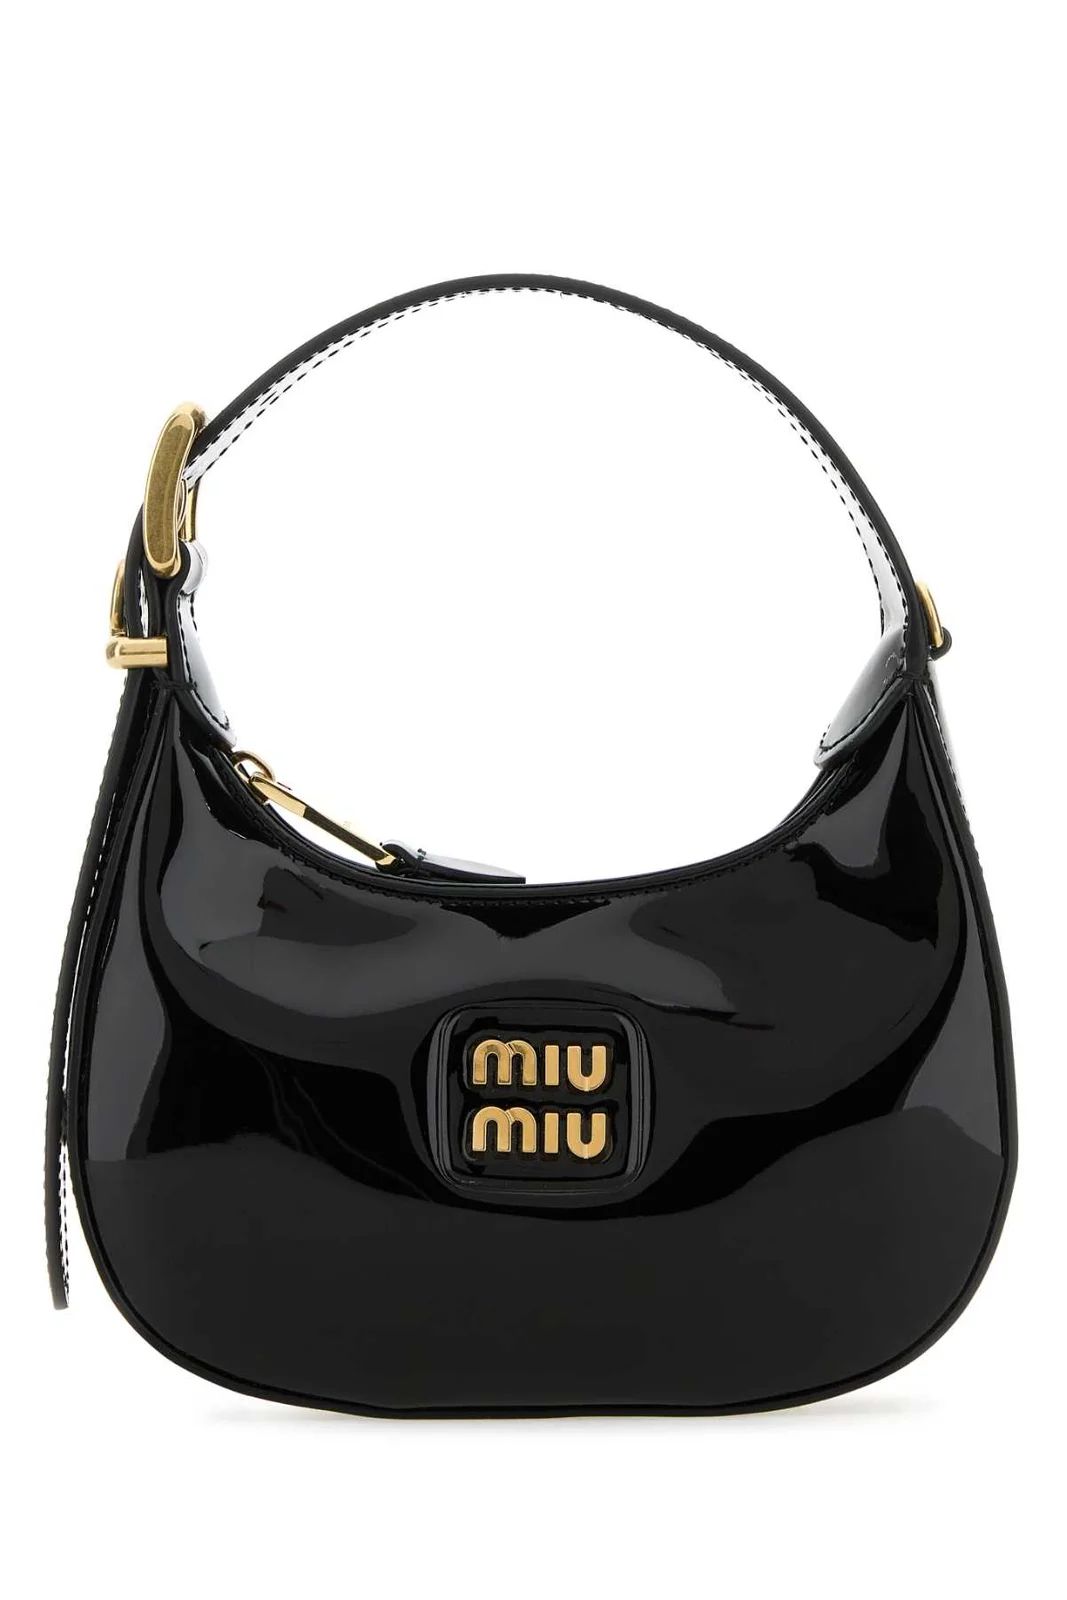 Miu Miu Logo Plaque Tote Bag | Cettire Global